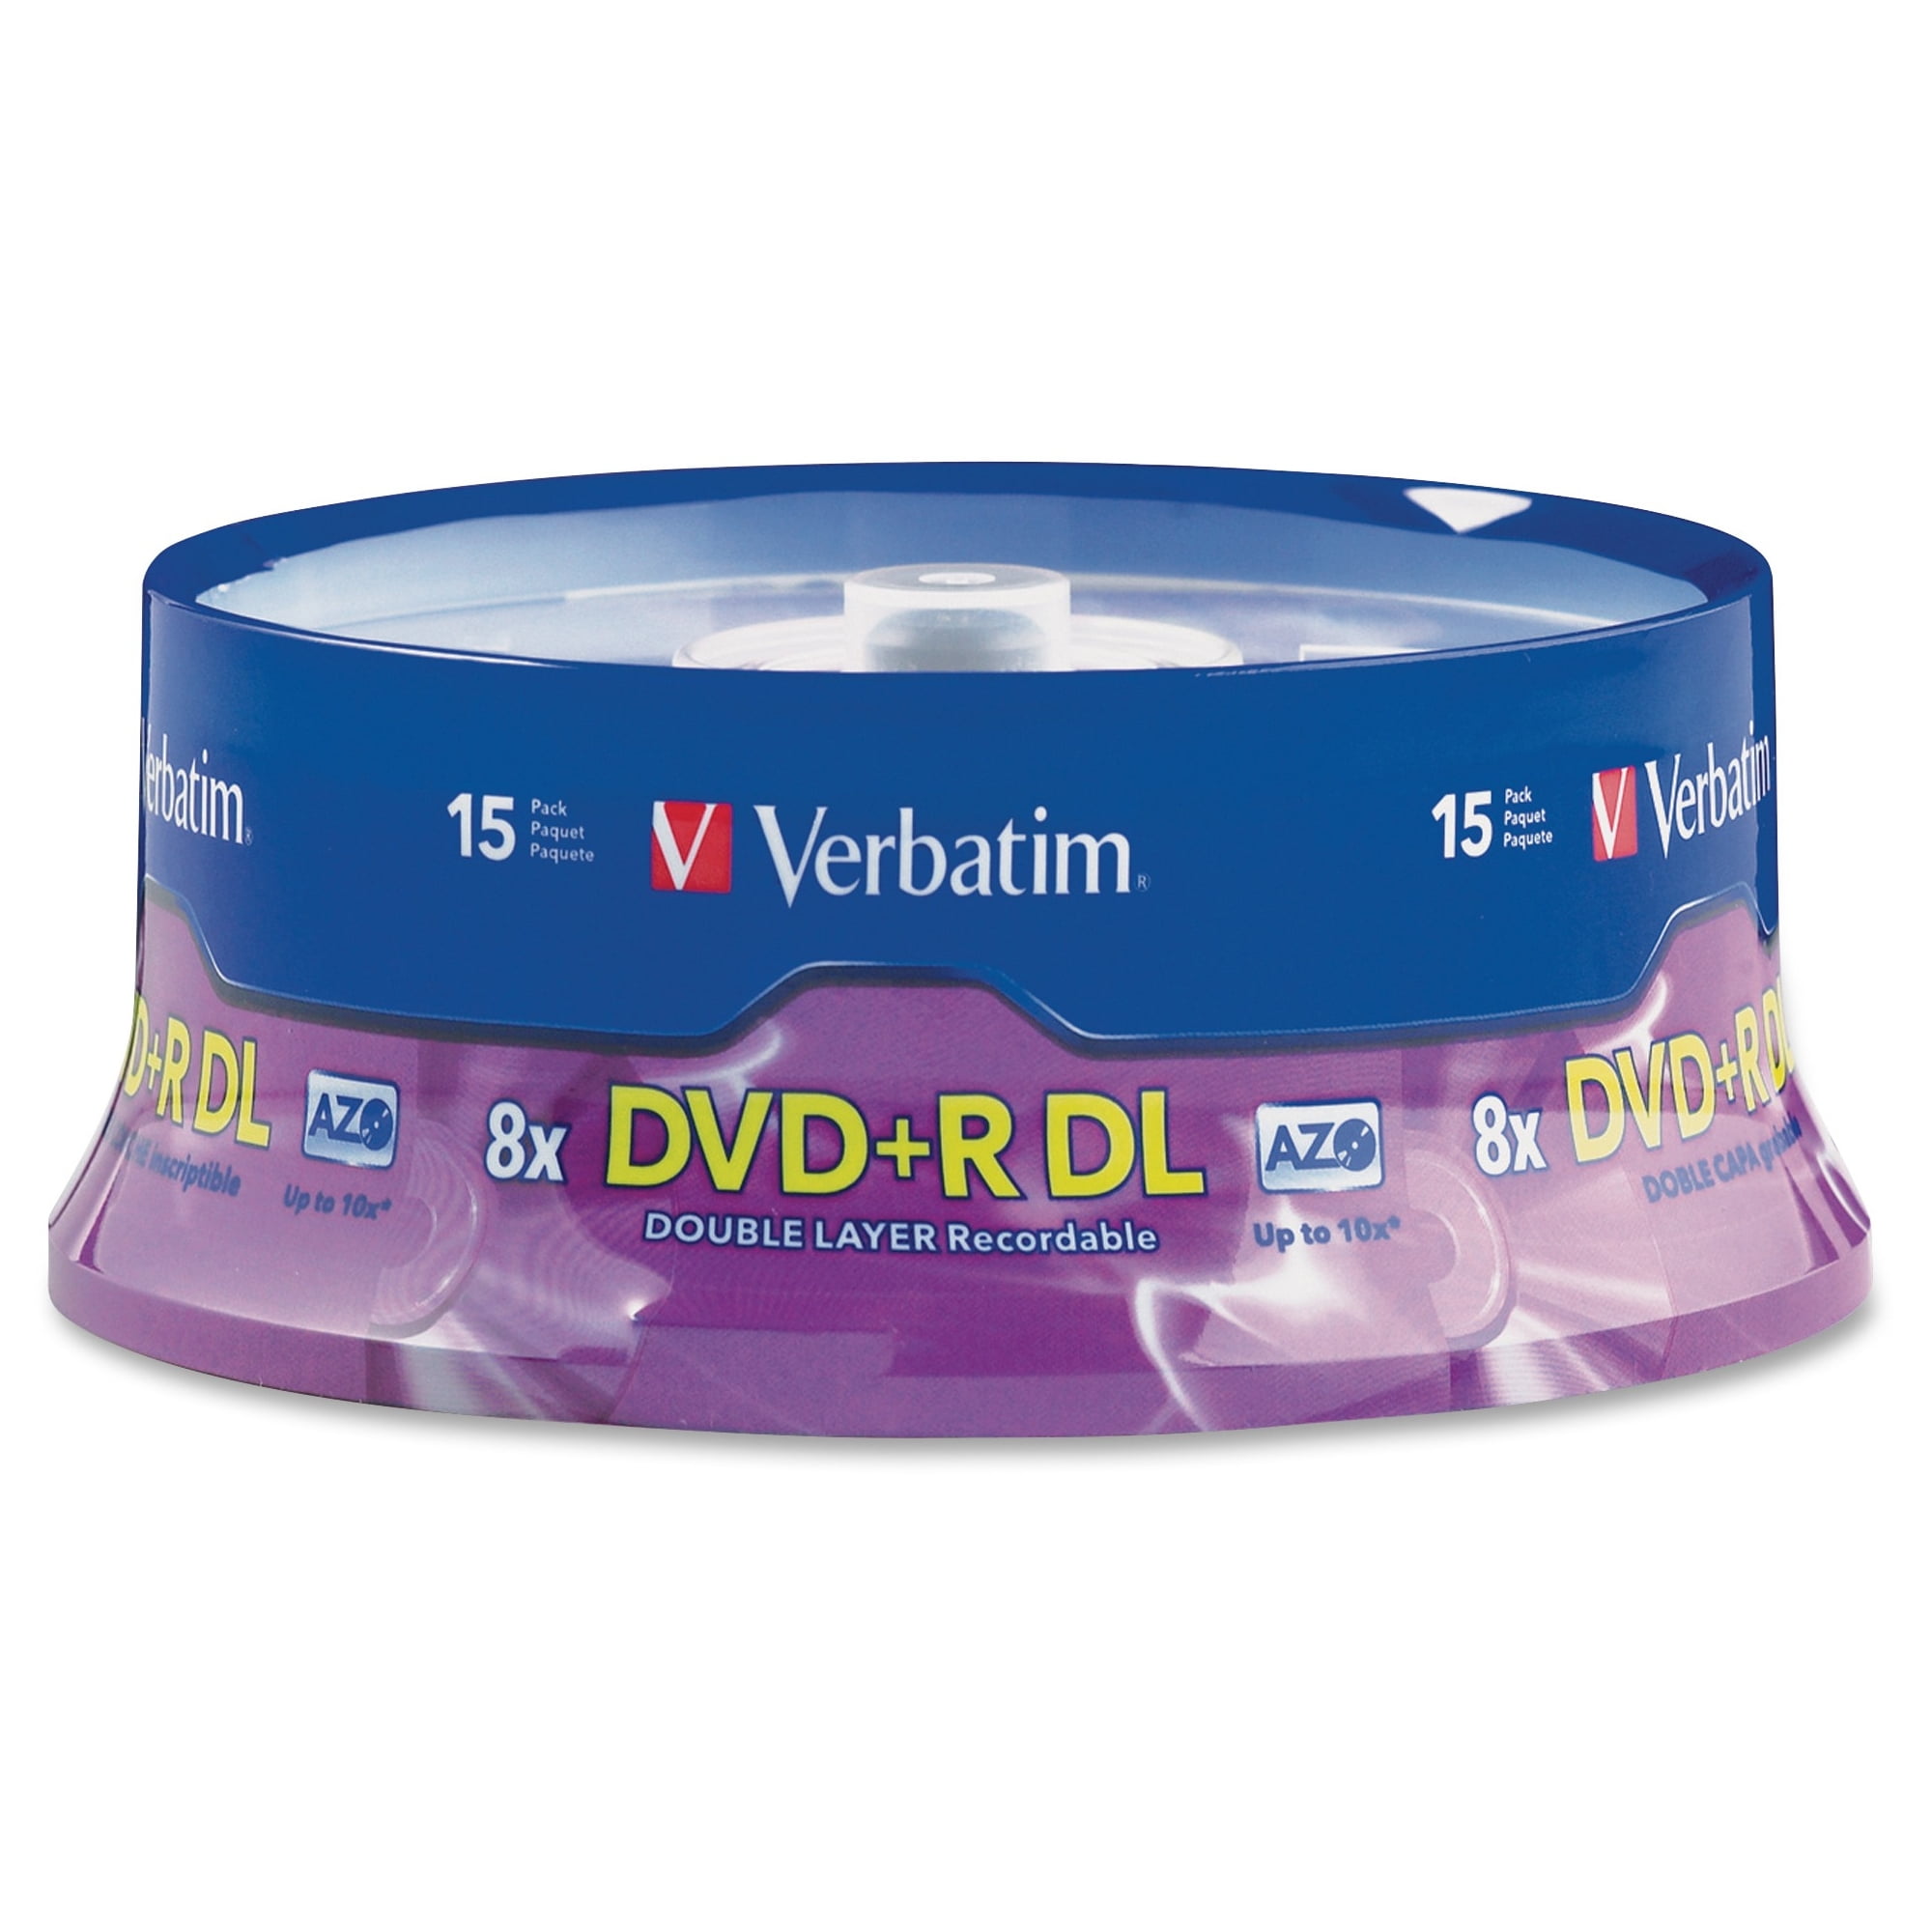 DVD-R, DVD+R, DVD-RW, DVD+RW, DVD-RAM, DVD DL Dual Layer, 8cm DVD